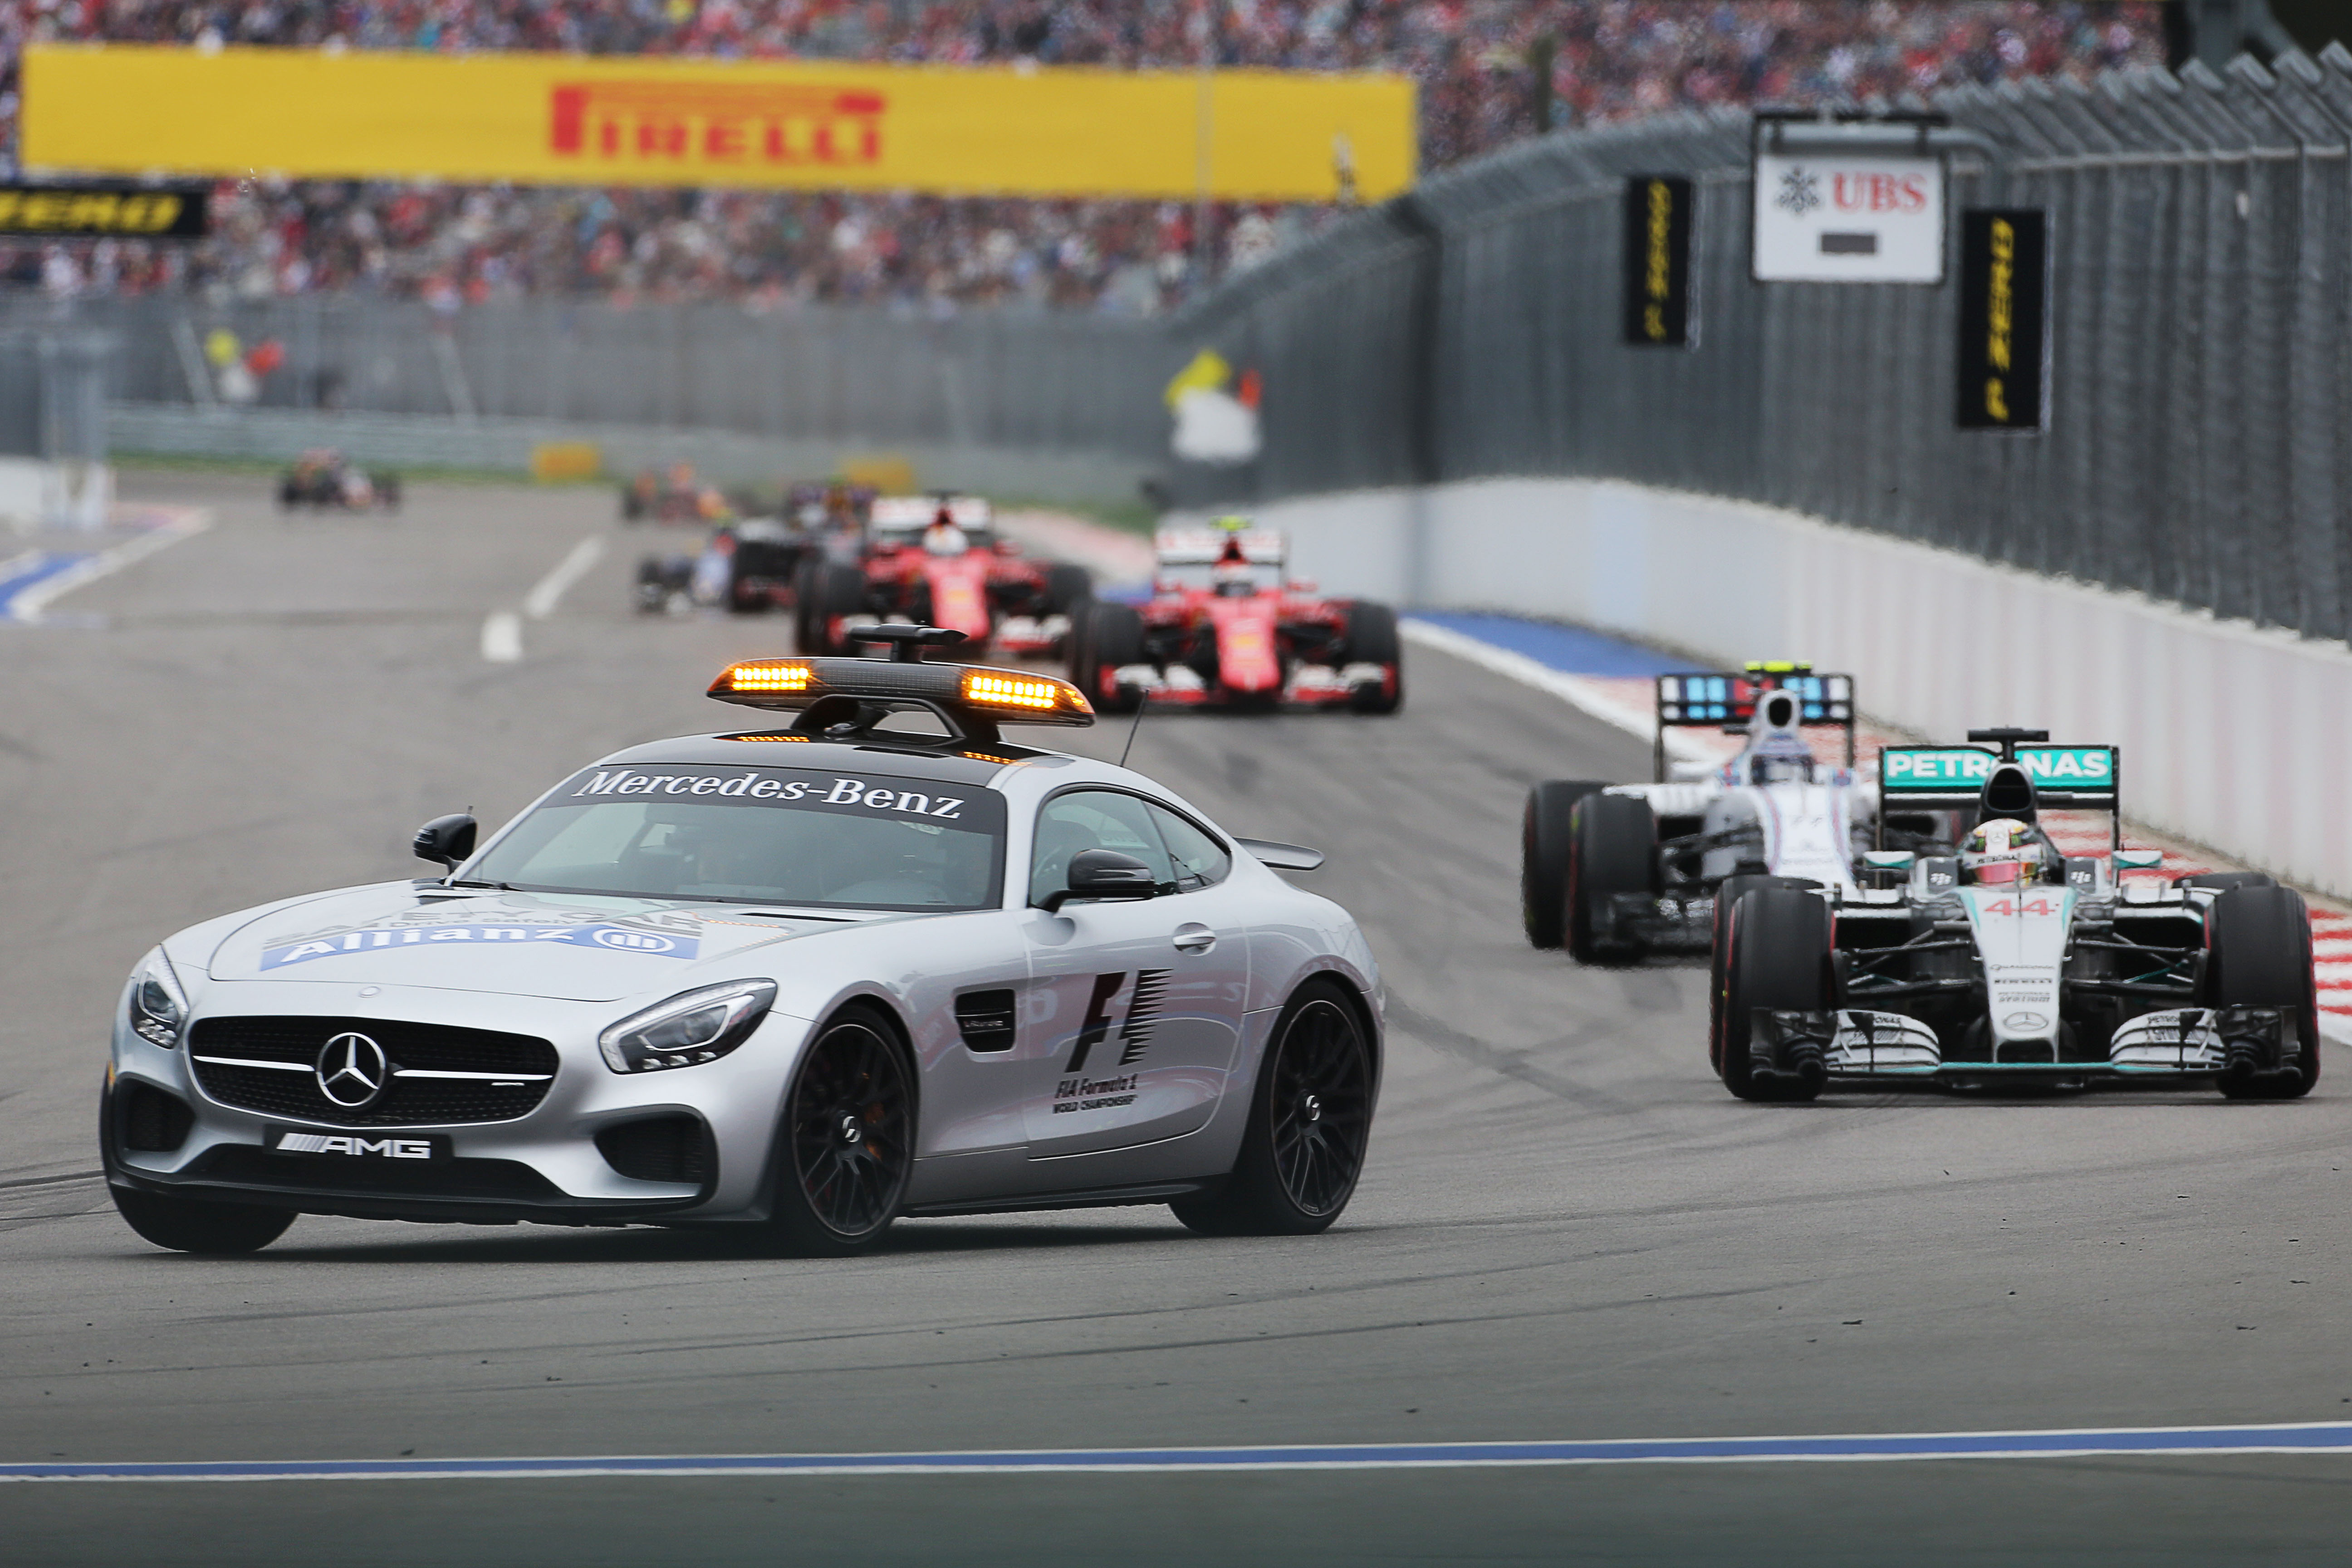 Race: Hamilton neemt voorschot op titel na uitvallen Rosberg